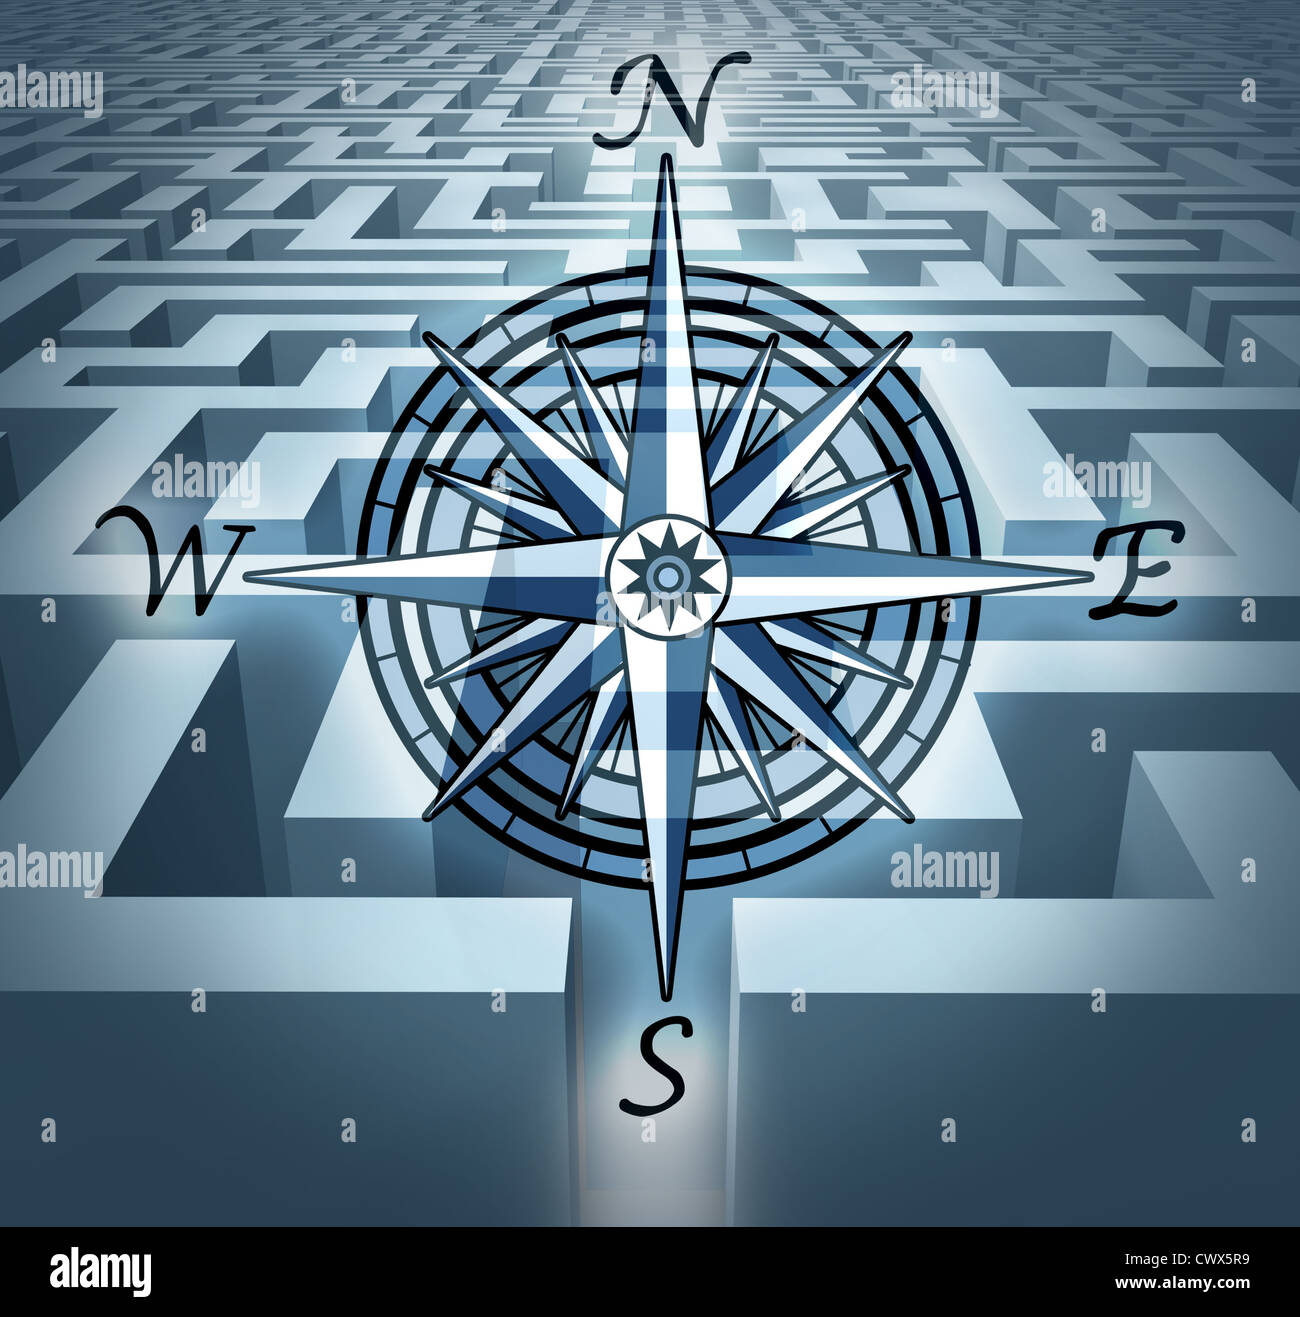 Navigation dans les défis représentés par un labyrinthe labyrinthe en 3D avec une rose des vents, symbole montrant le concept de résolution de problèmes et la planification et stratégie orientée solution. Banque D'Images